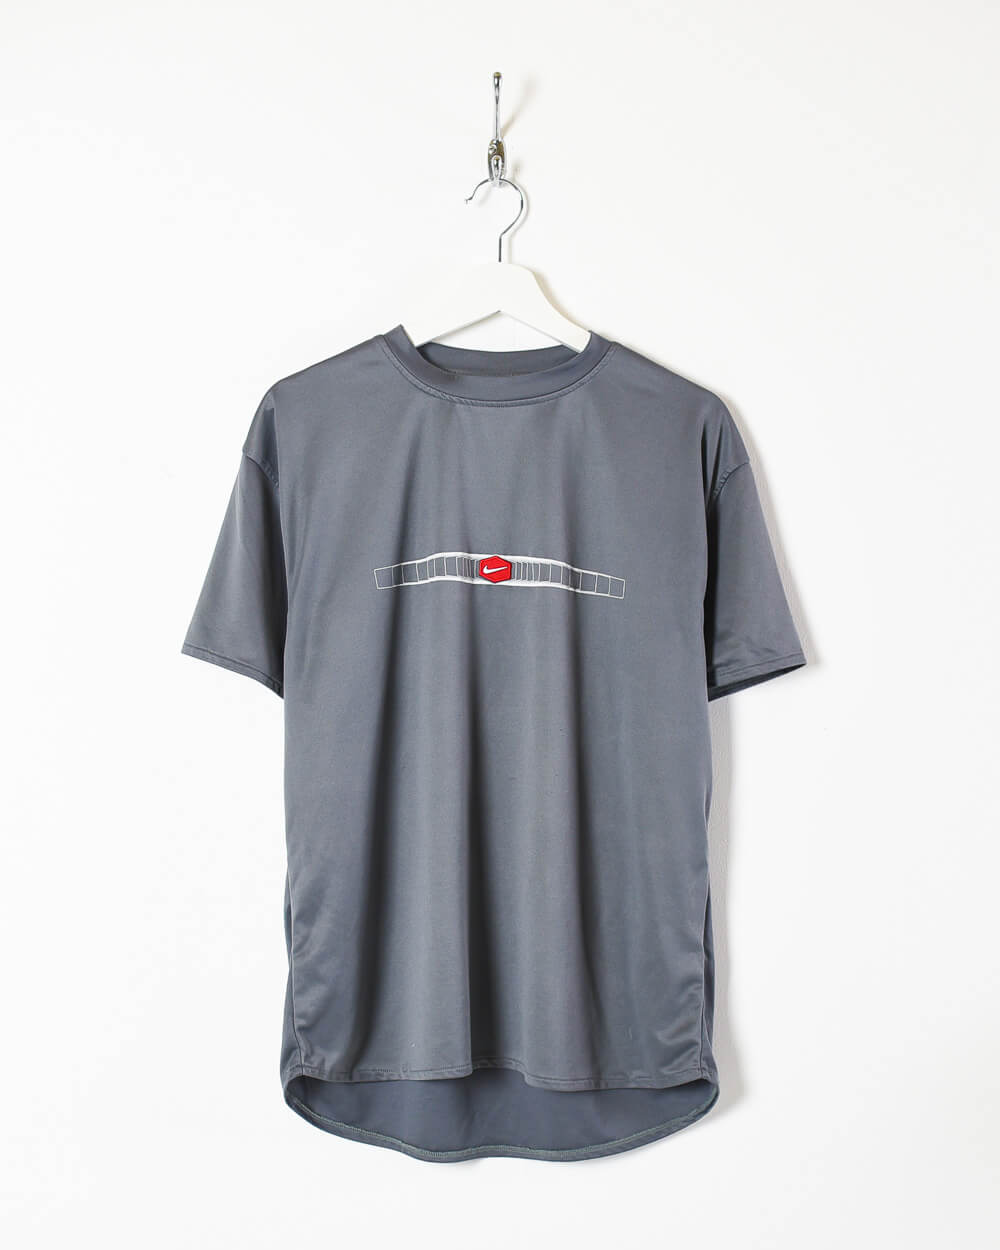 Grey Nike T-Shirt - Medium